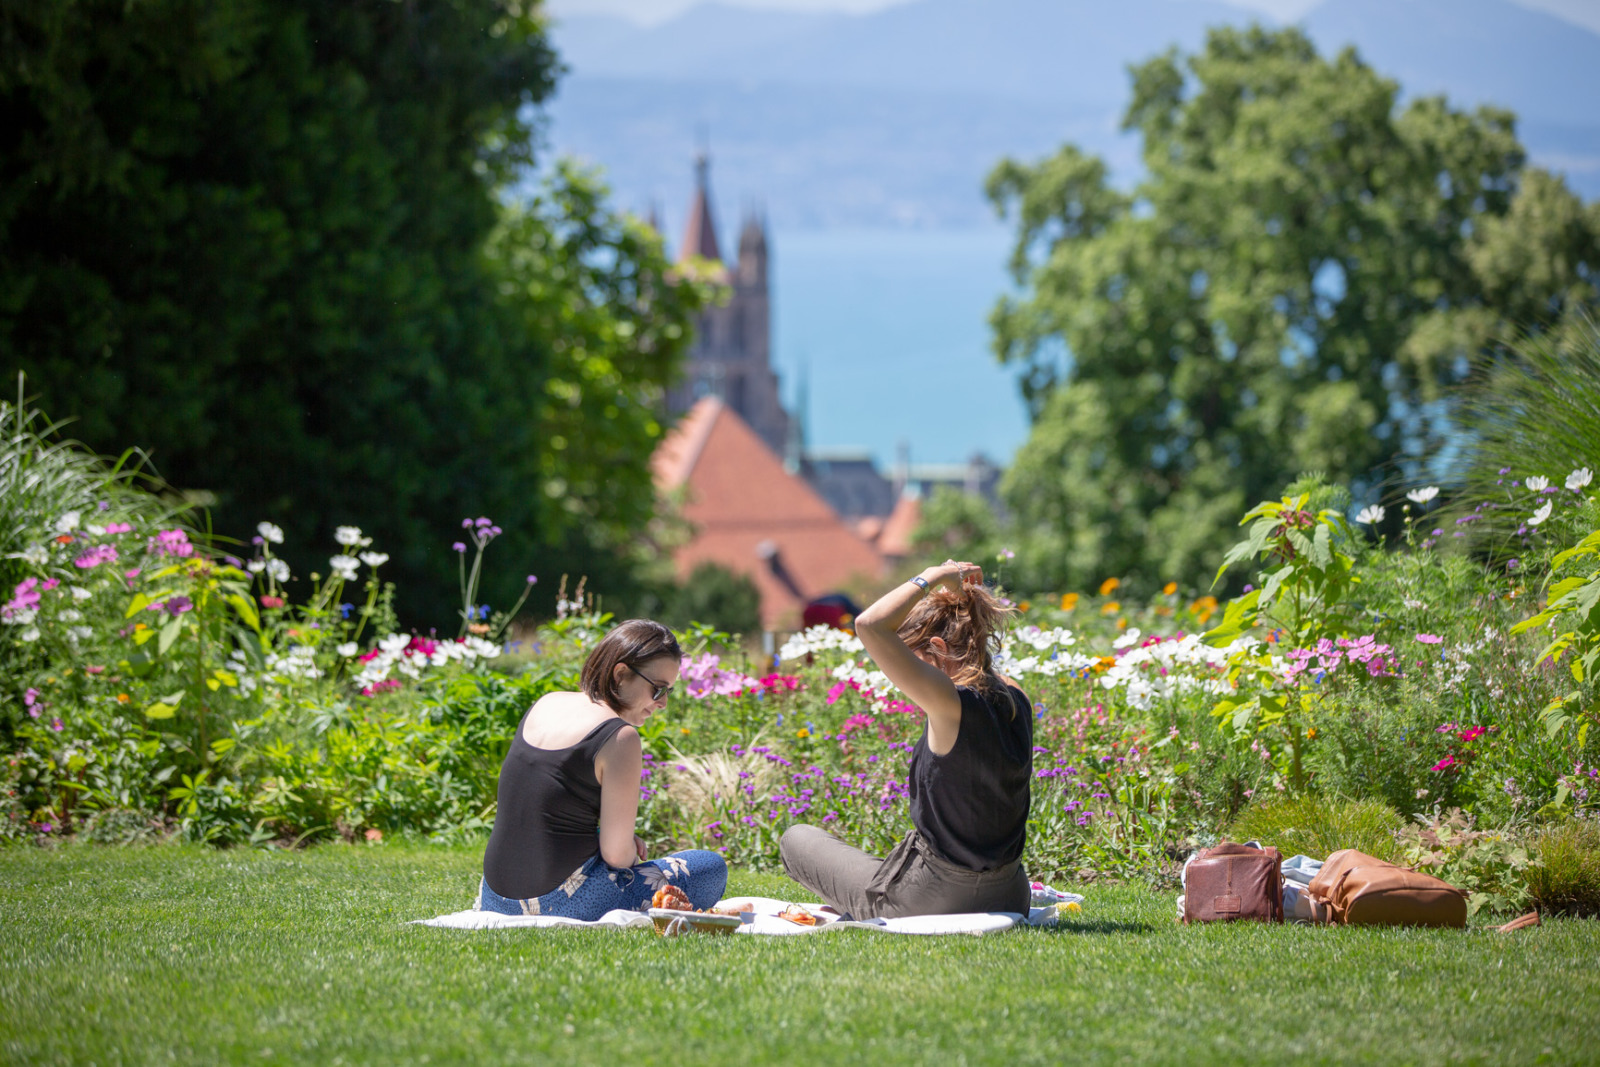 Evenement Lausanne a Table. Dejeuner sur l'herbe dans le parc de la Fondation de l'Hermitage avec vue sur la Cathedrale